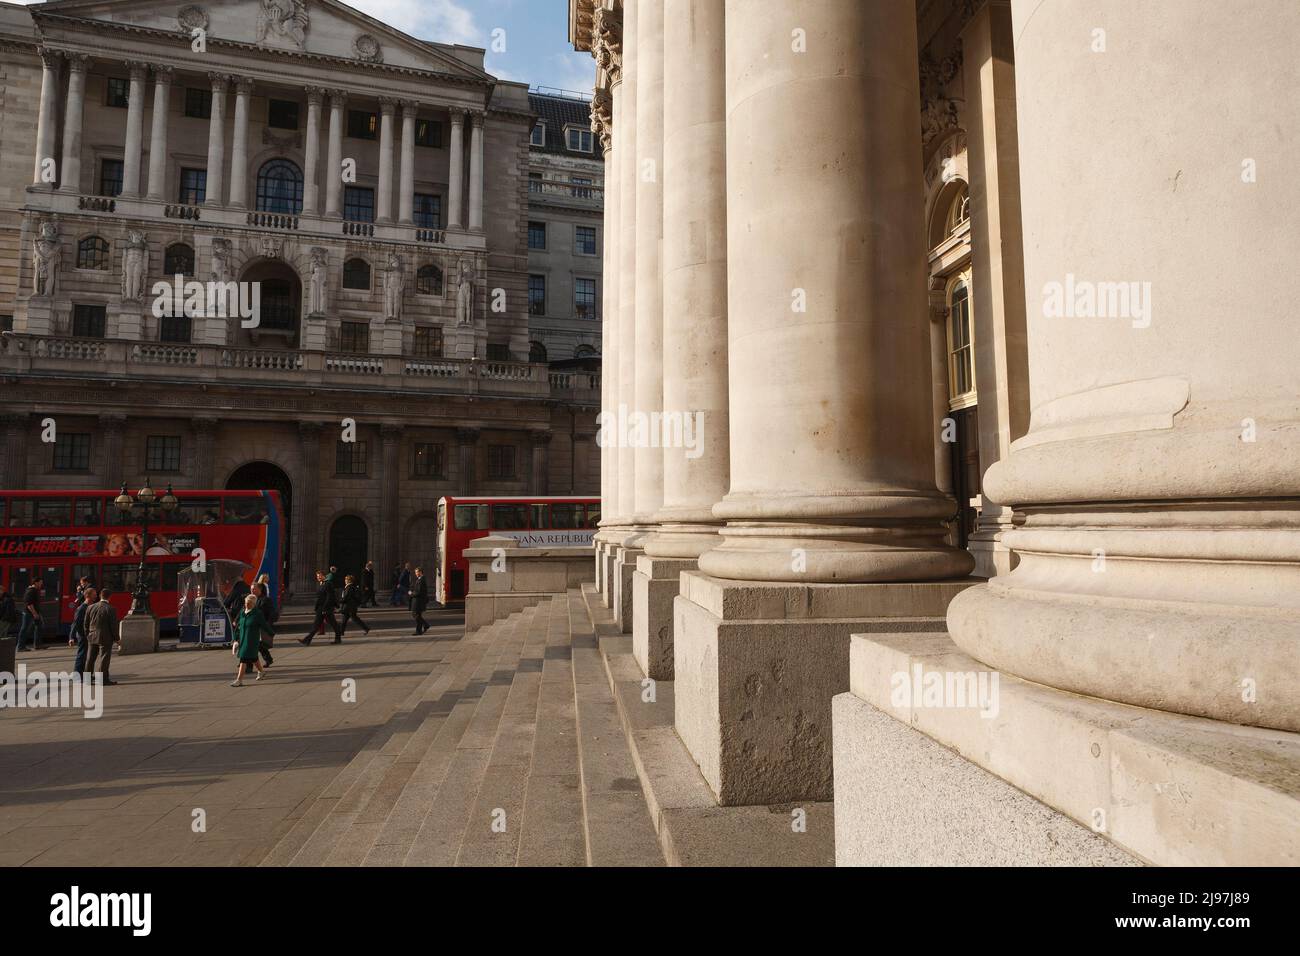 Una vista verso Bank of England con la colonna del Royal Exchange sulla destra. Bank of England è la banca centrale del Regno Unito. Foto Stock